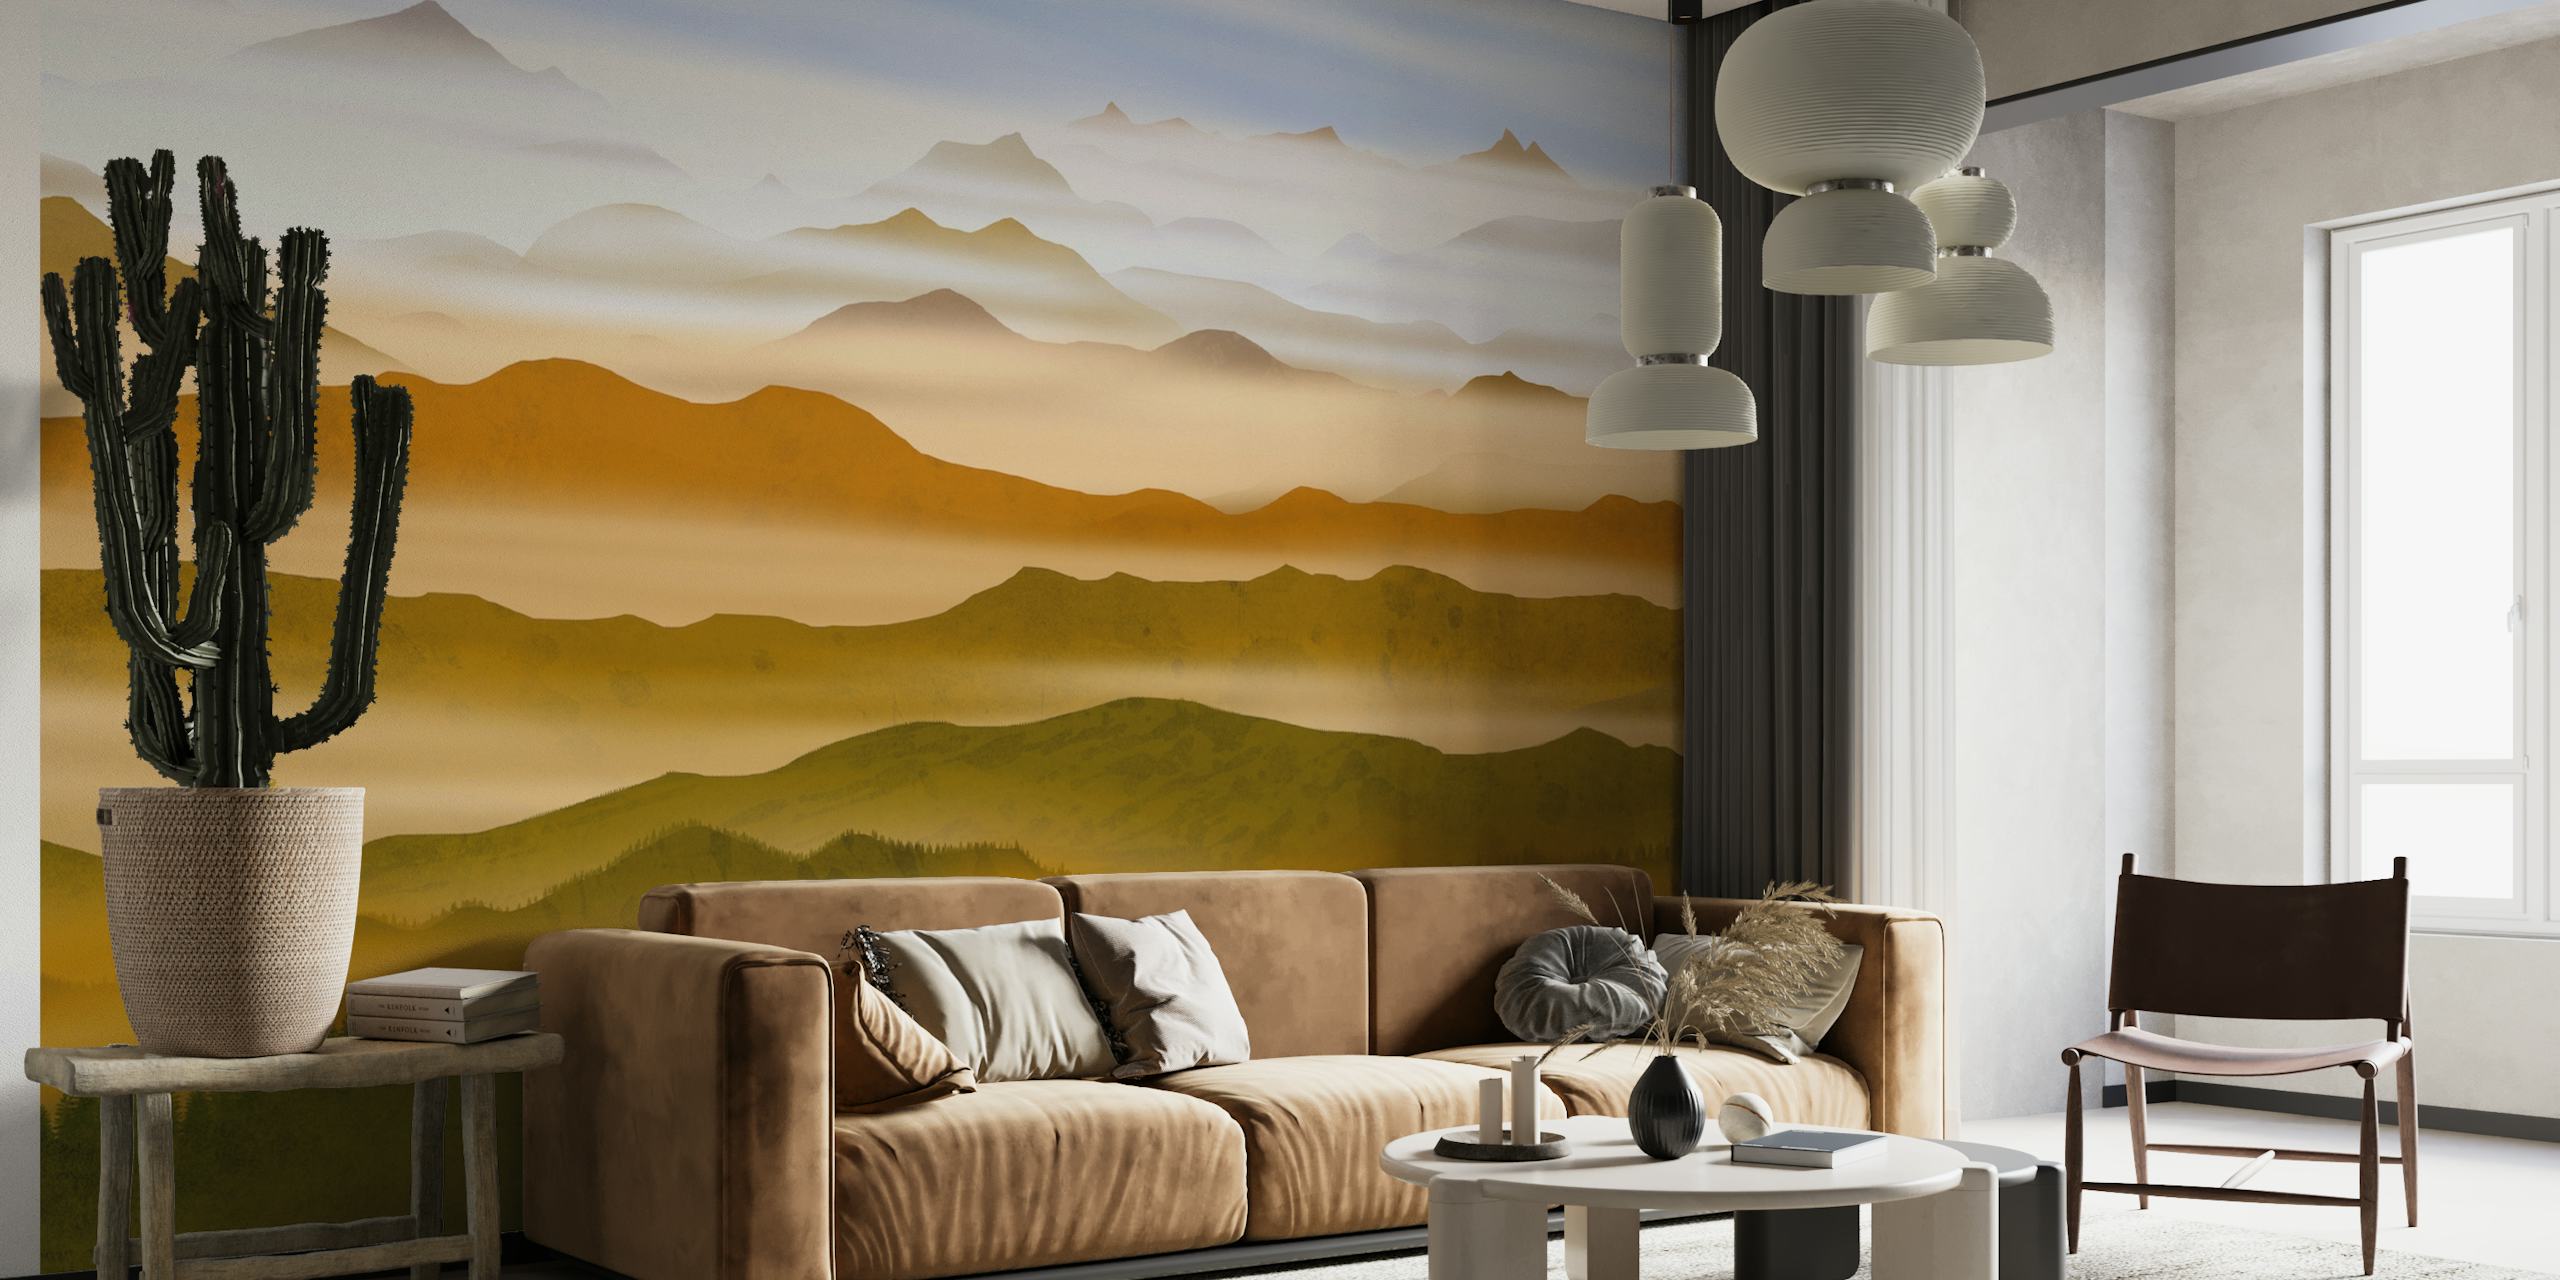 Pearl Valleys fotobehang met gelaagde heuvels en zachte aardetinten